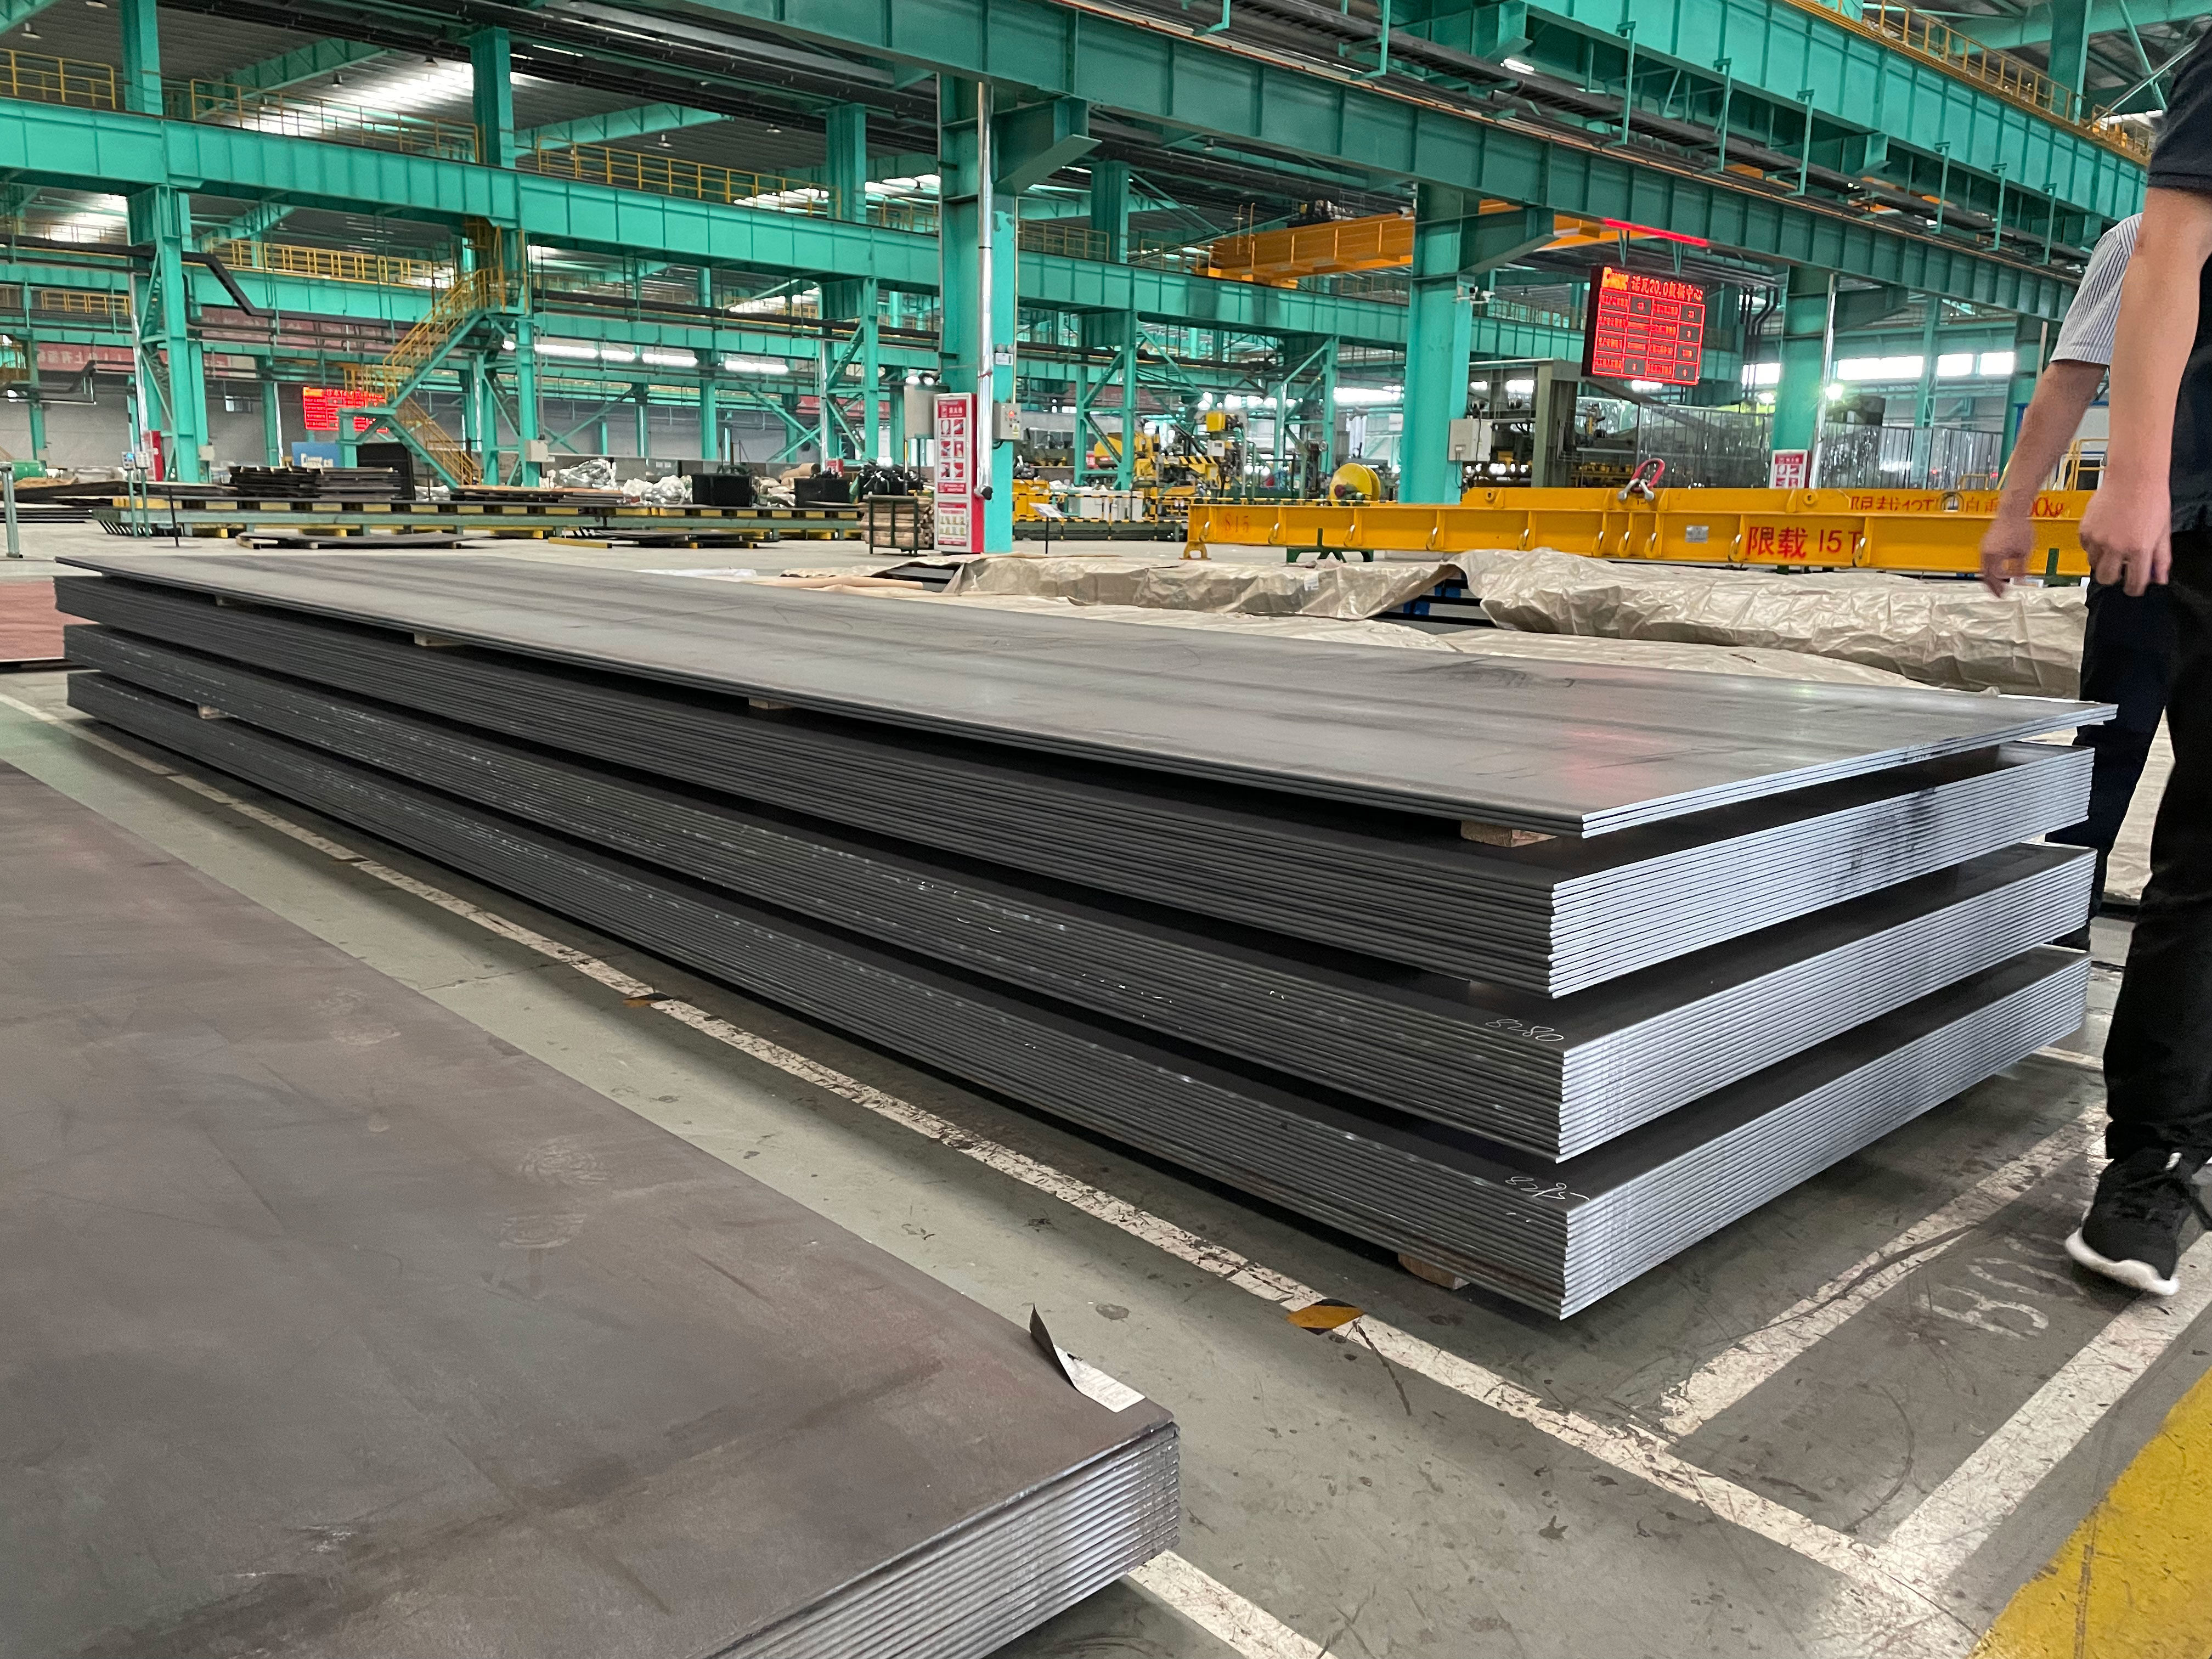 Компания Shanghai Zhongze Yi Metal Disassembly Co., Ltd. гордится своей продукцией – пластиной из углеродистой стали.